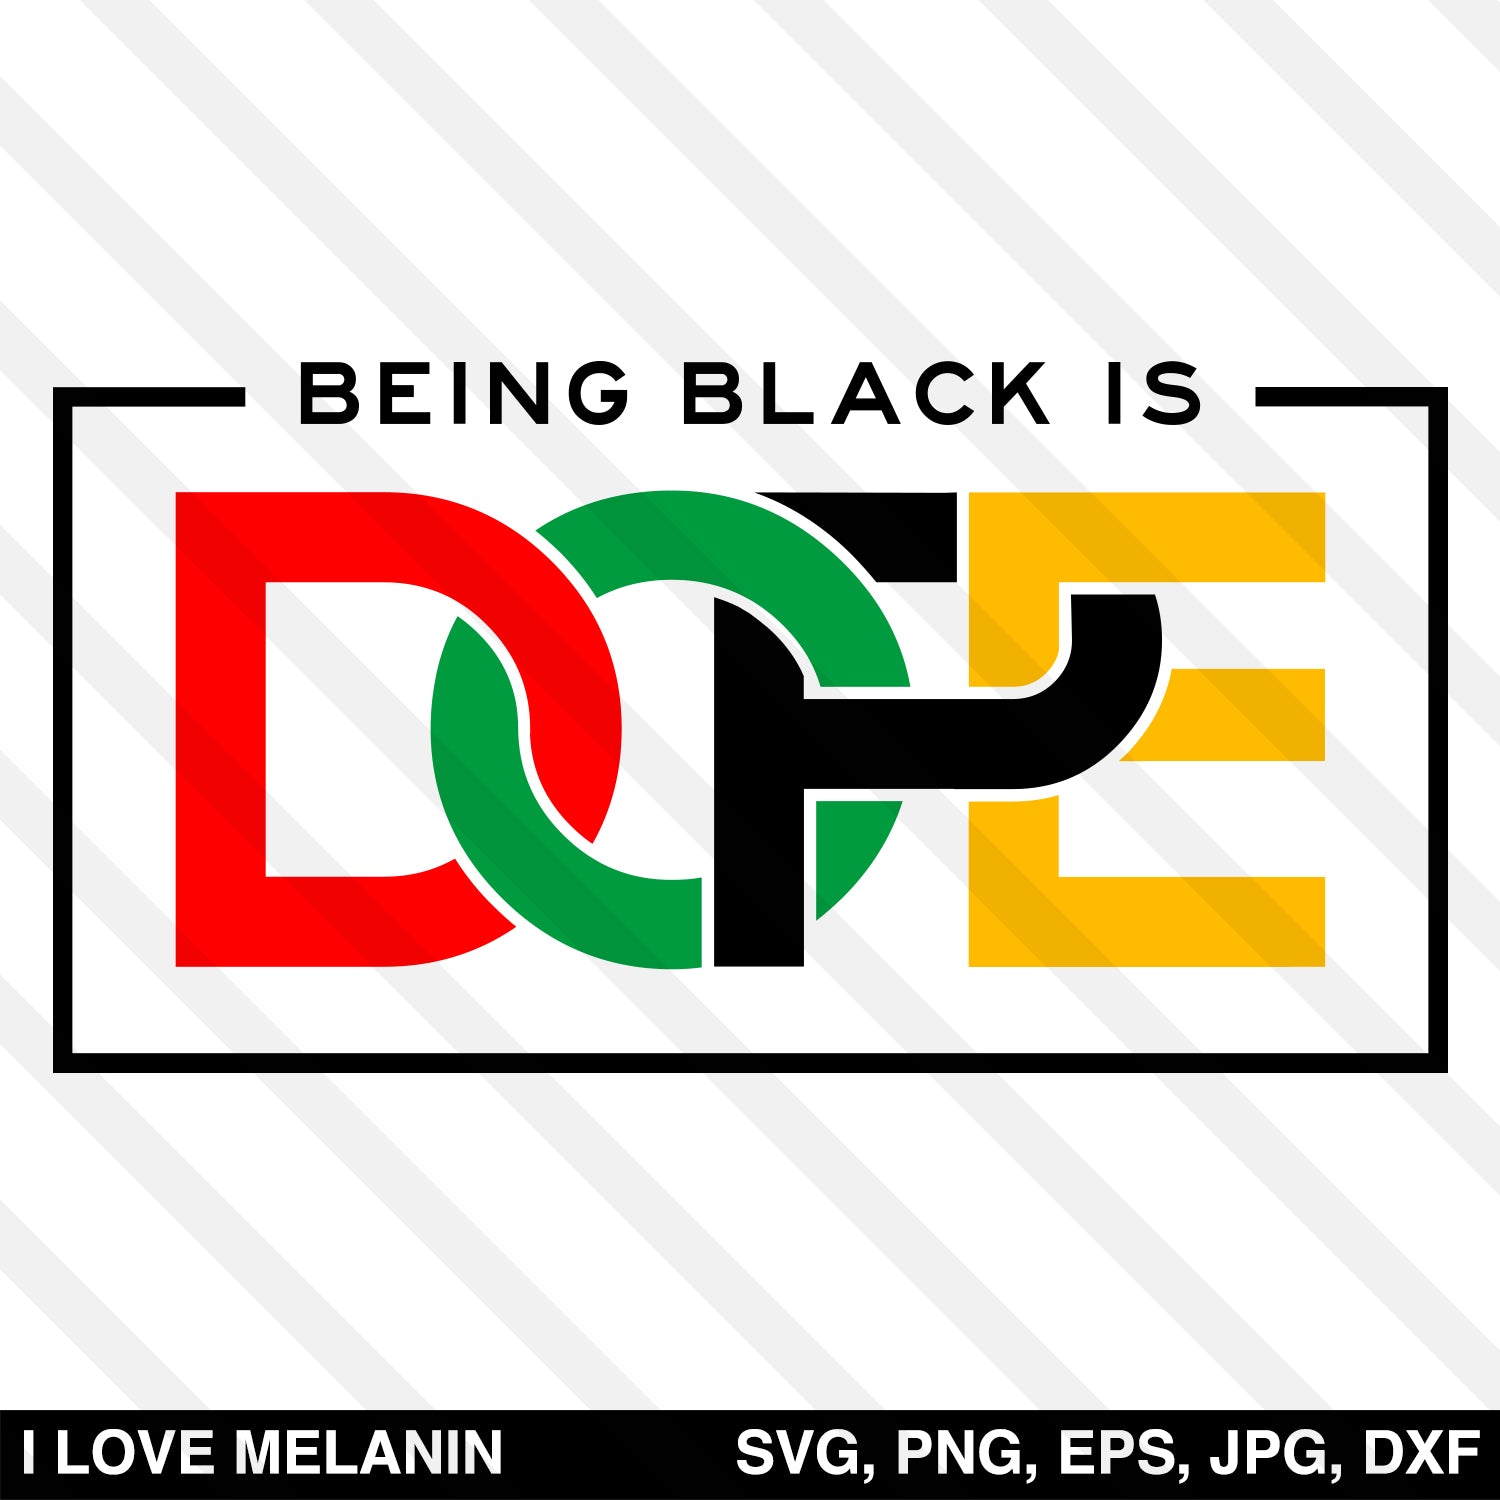 Being Black Is Dope SVG - I Love Melanin